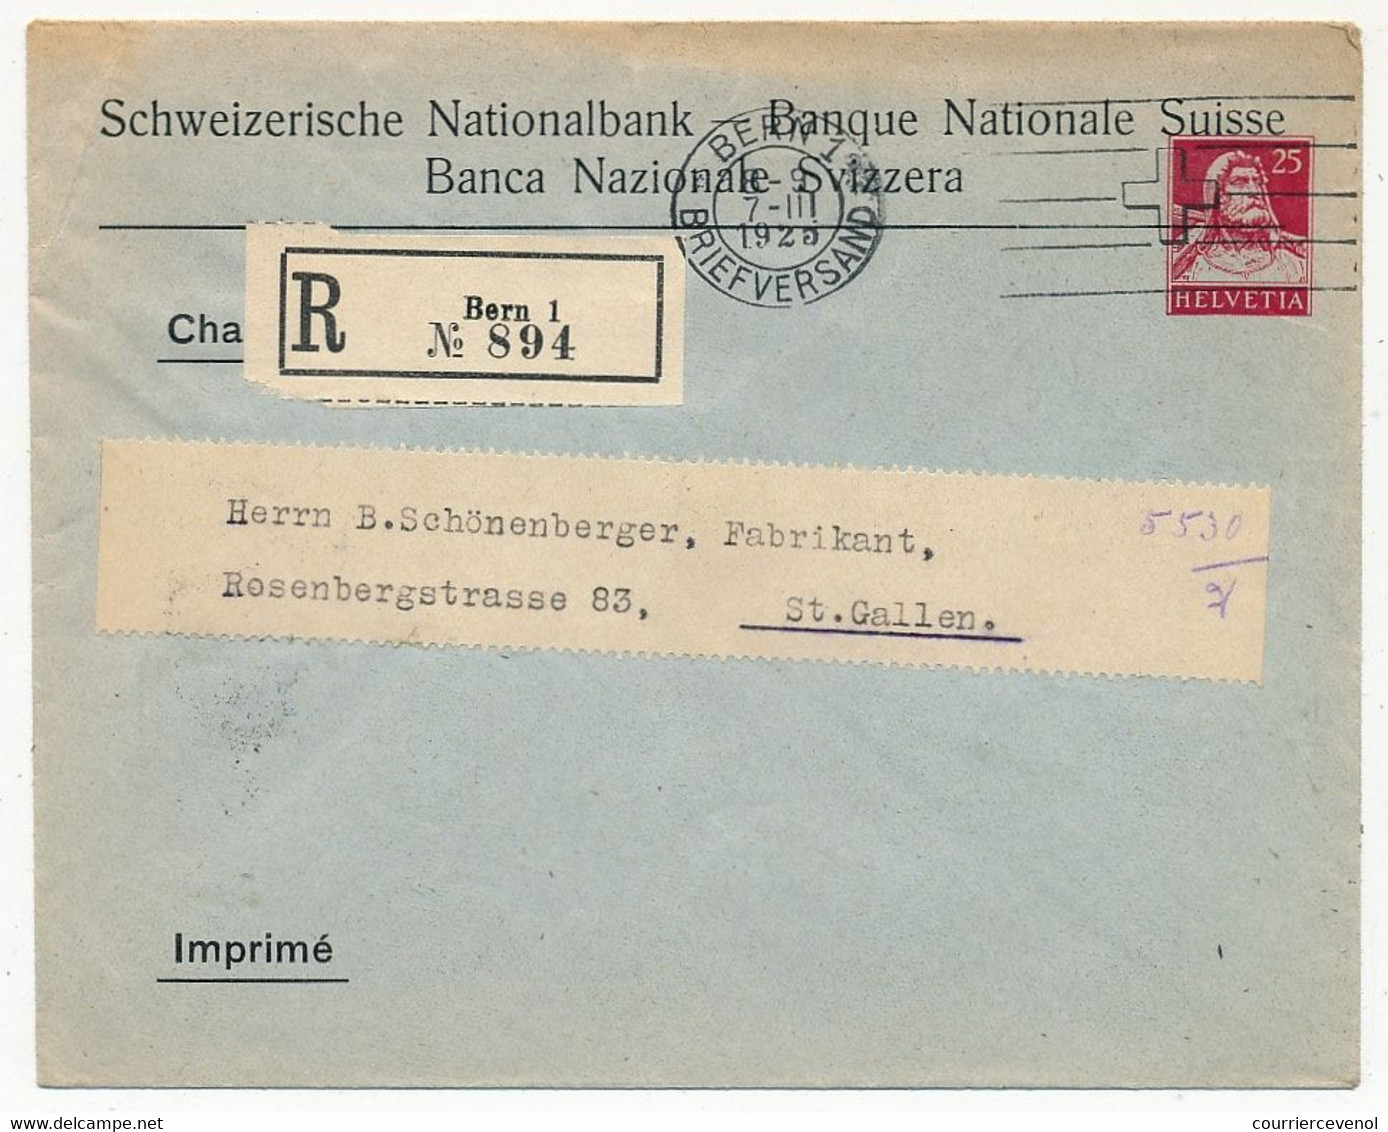 SUISSE - Enveloppe (Entier Postal PRIVÉ) 25c Helvetia - Banque Nationale Suisse - Recommandée Bern 1 - 1925 - Ganzsachen